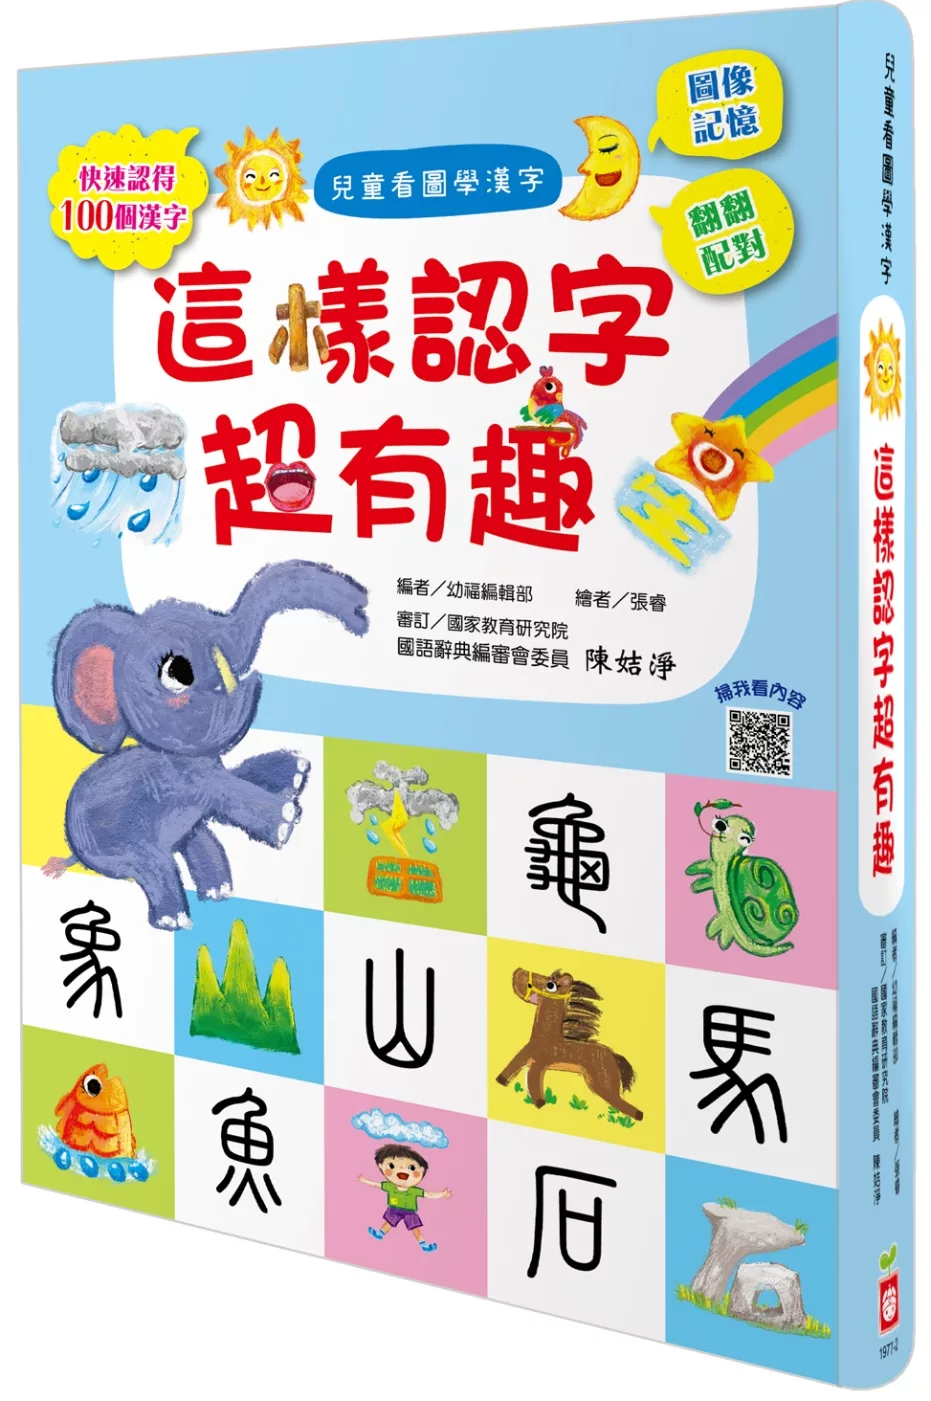 博客來 兒童看圖學漢字 這樣認字超有趣 讓孩子看圖認字 運用聯想力